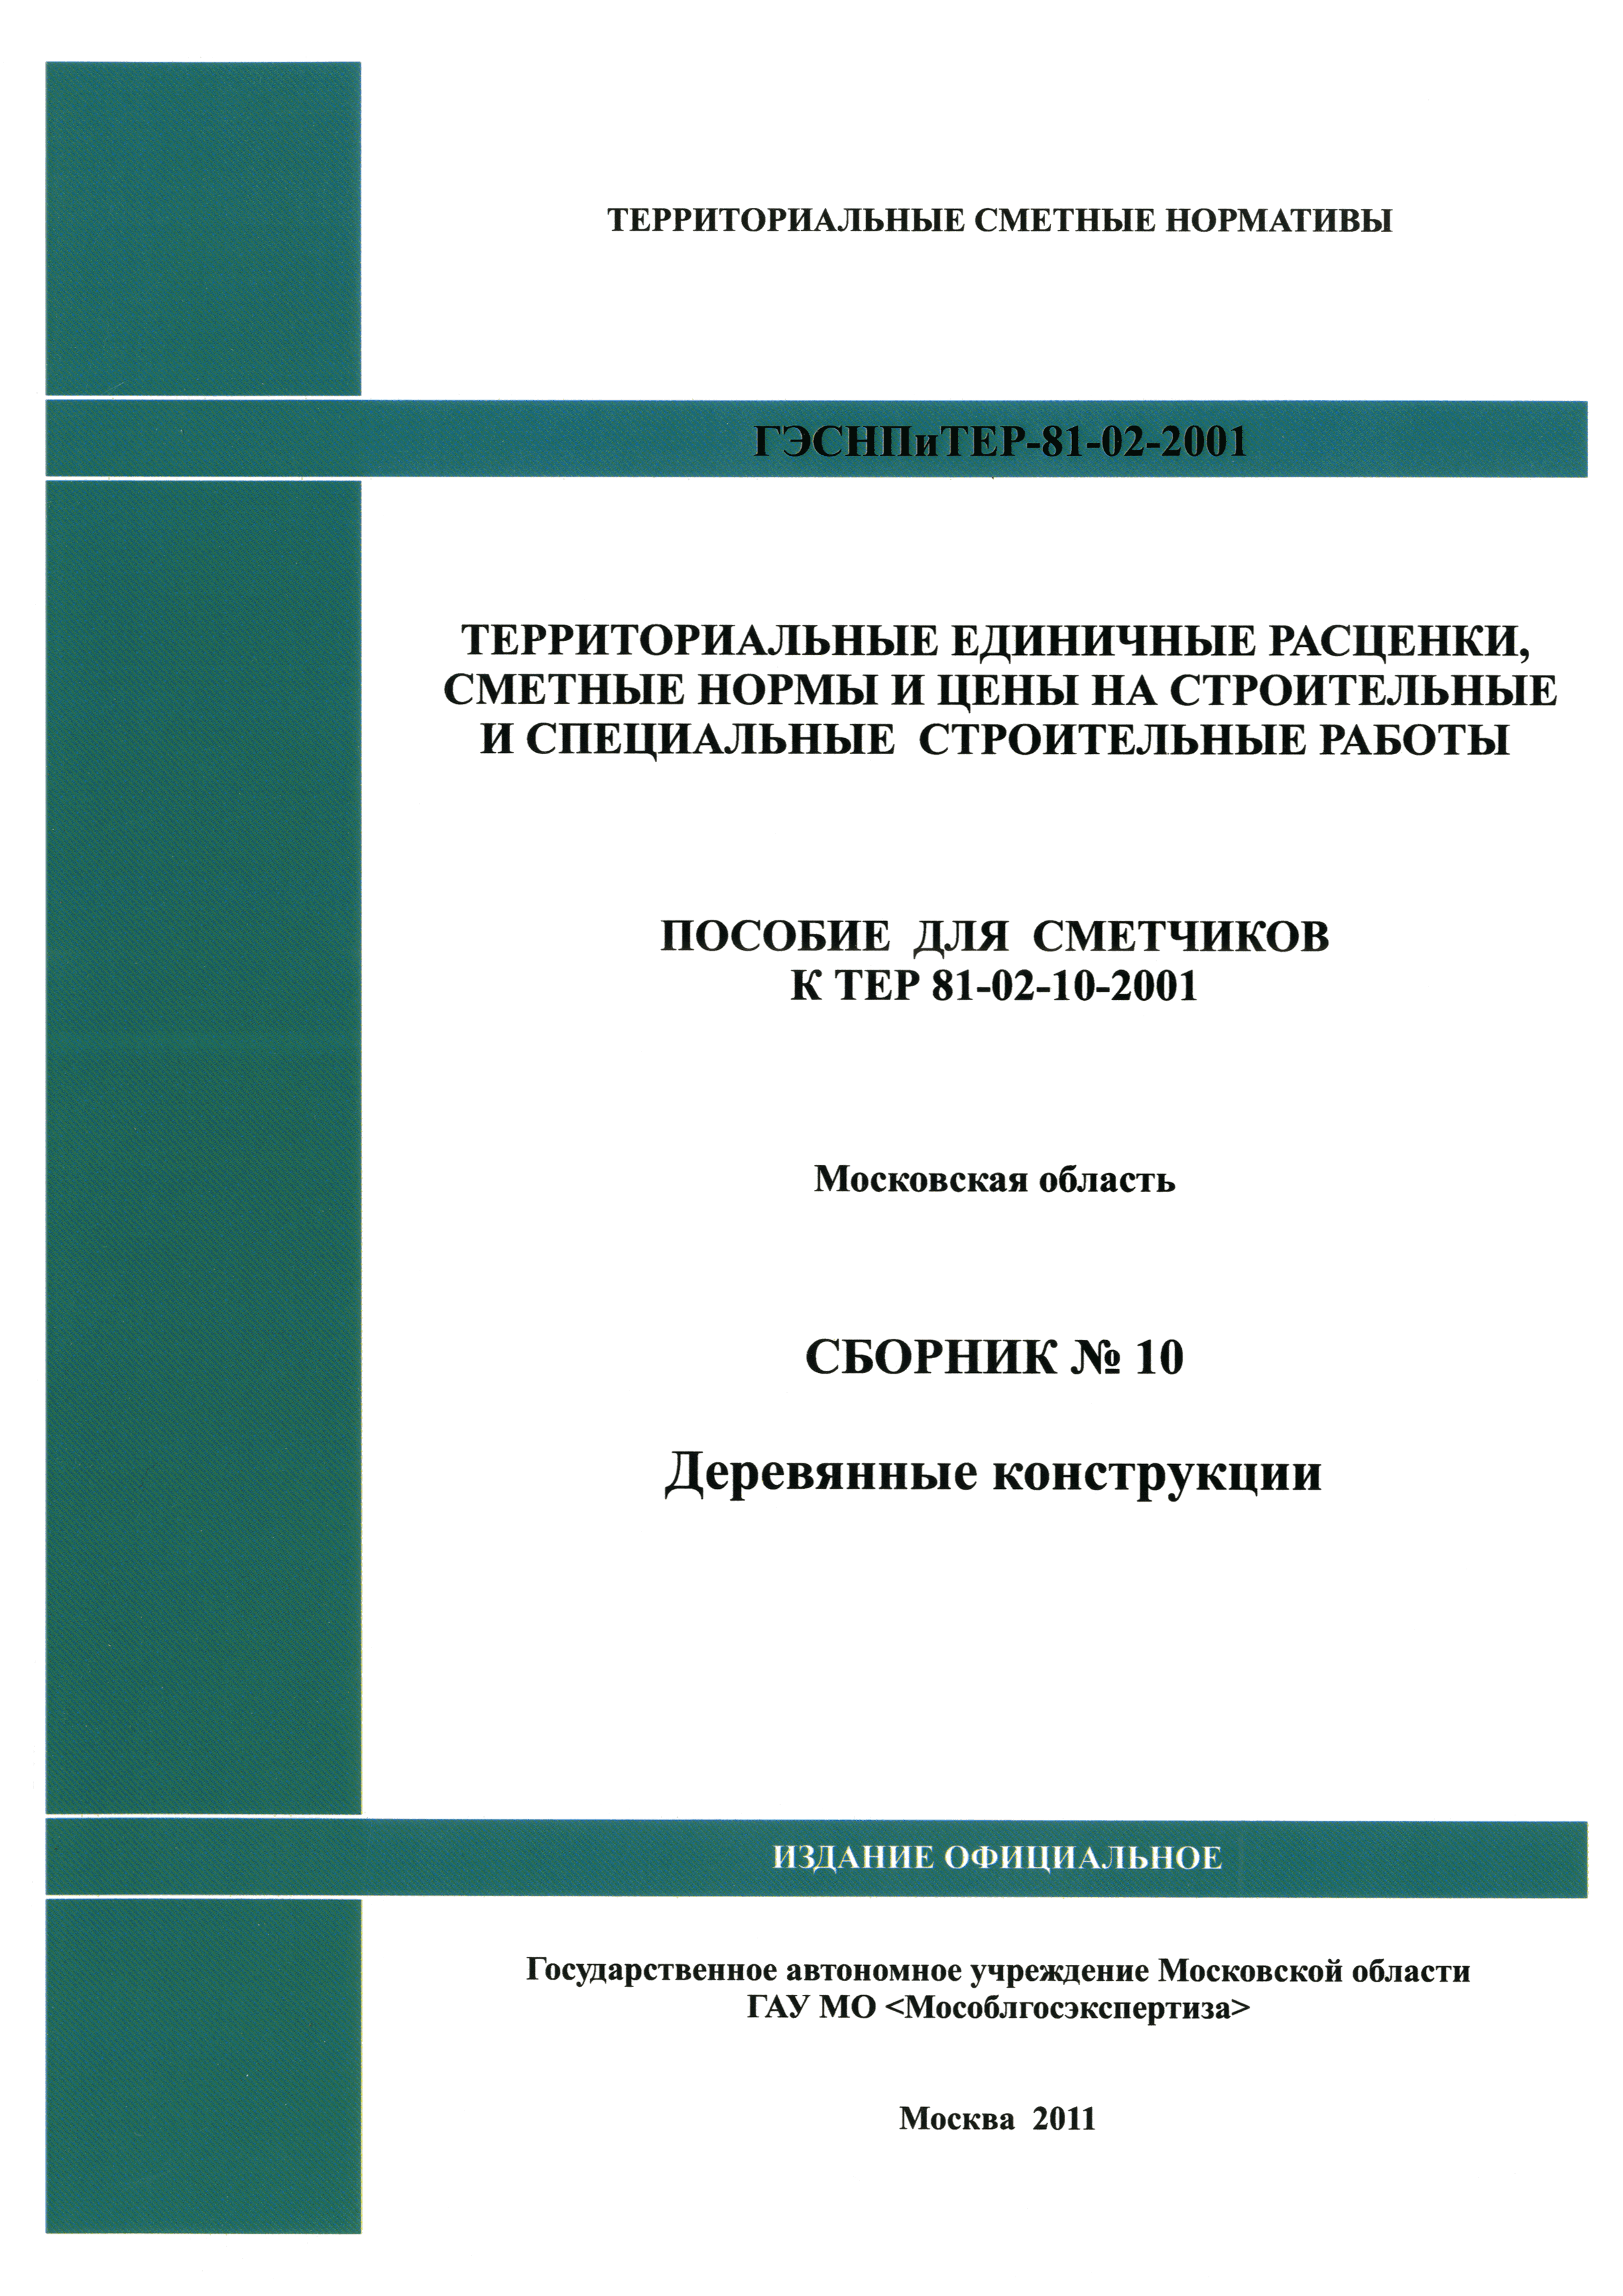 ГЭСНПиТЕР 2001-10 Московской области